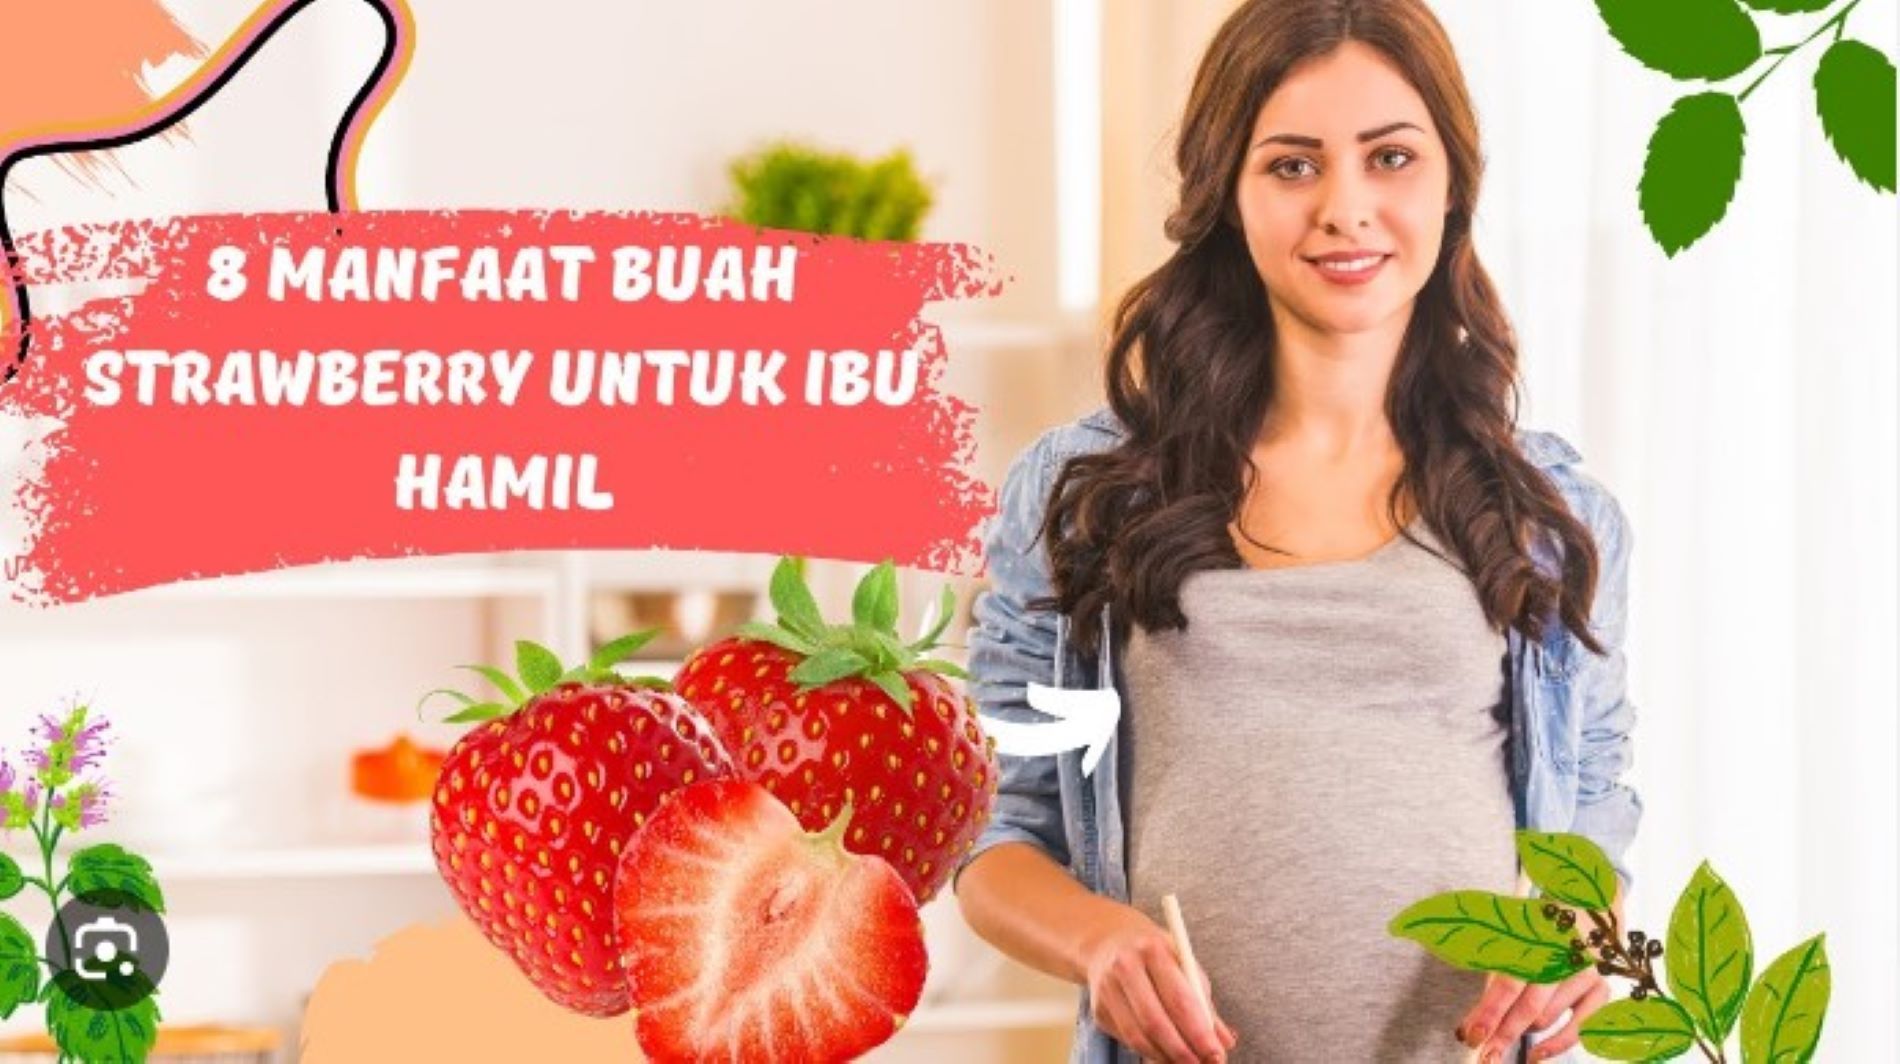 Ilustrasi Manfaat buah strawberi untuk ibu hamil/